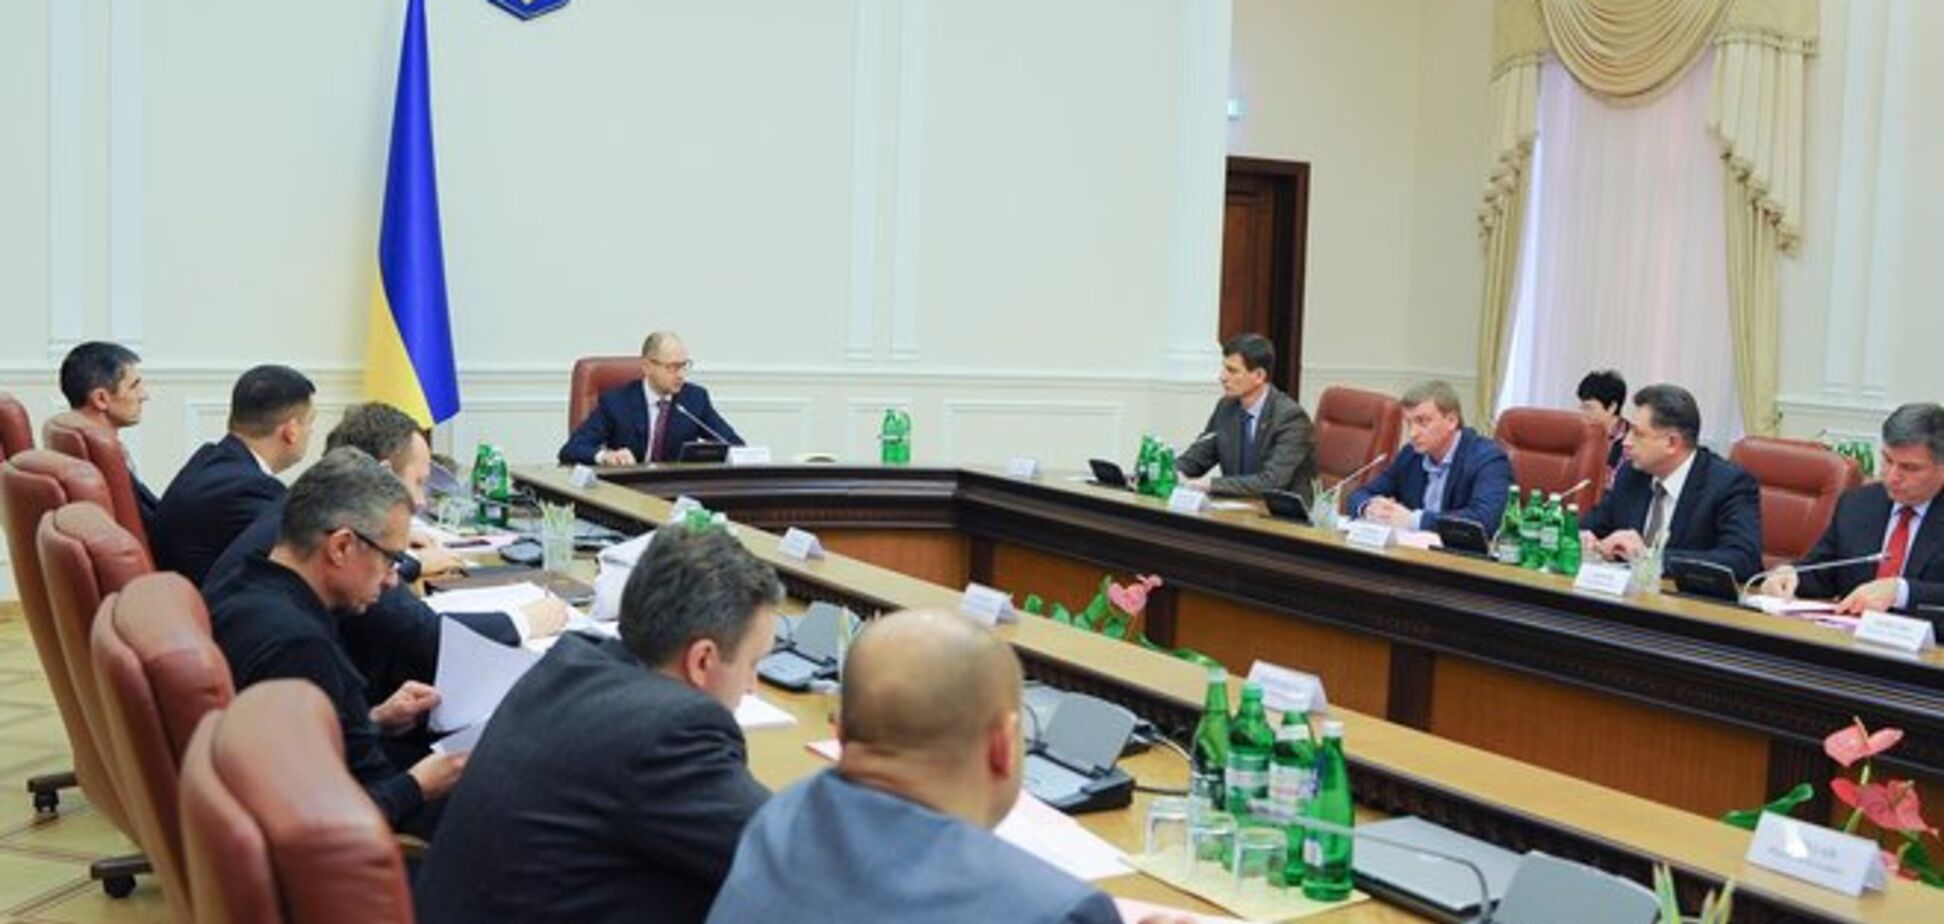 Кабмин обещает сделать все возможное для реализации мирного плана Порошенко